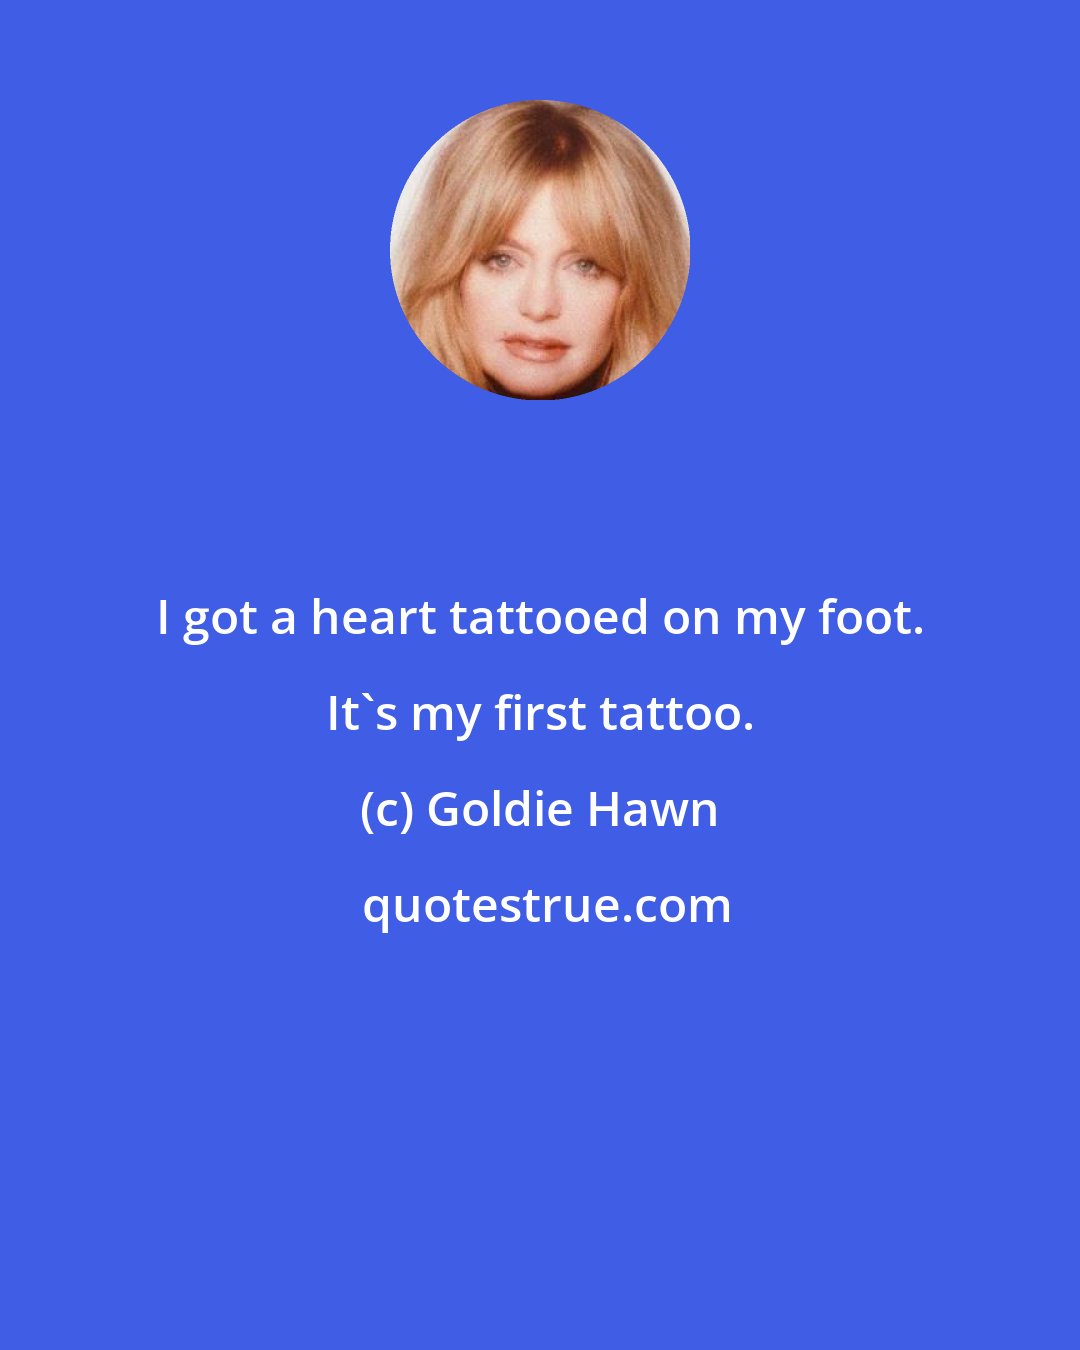 Goldie Hawn: I got a heart tattooed on my foot. It's my first tattoo.